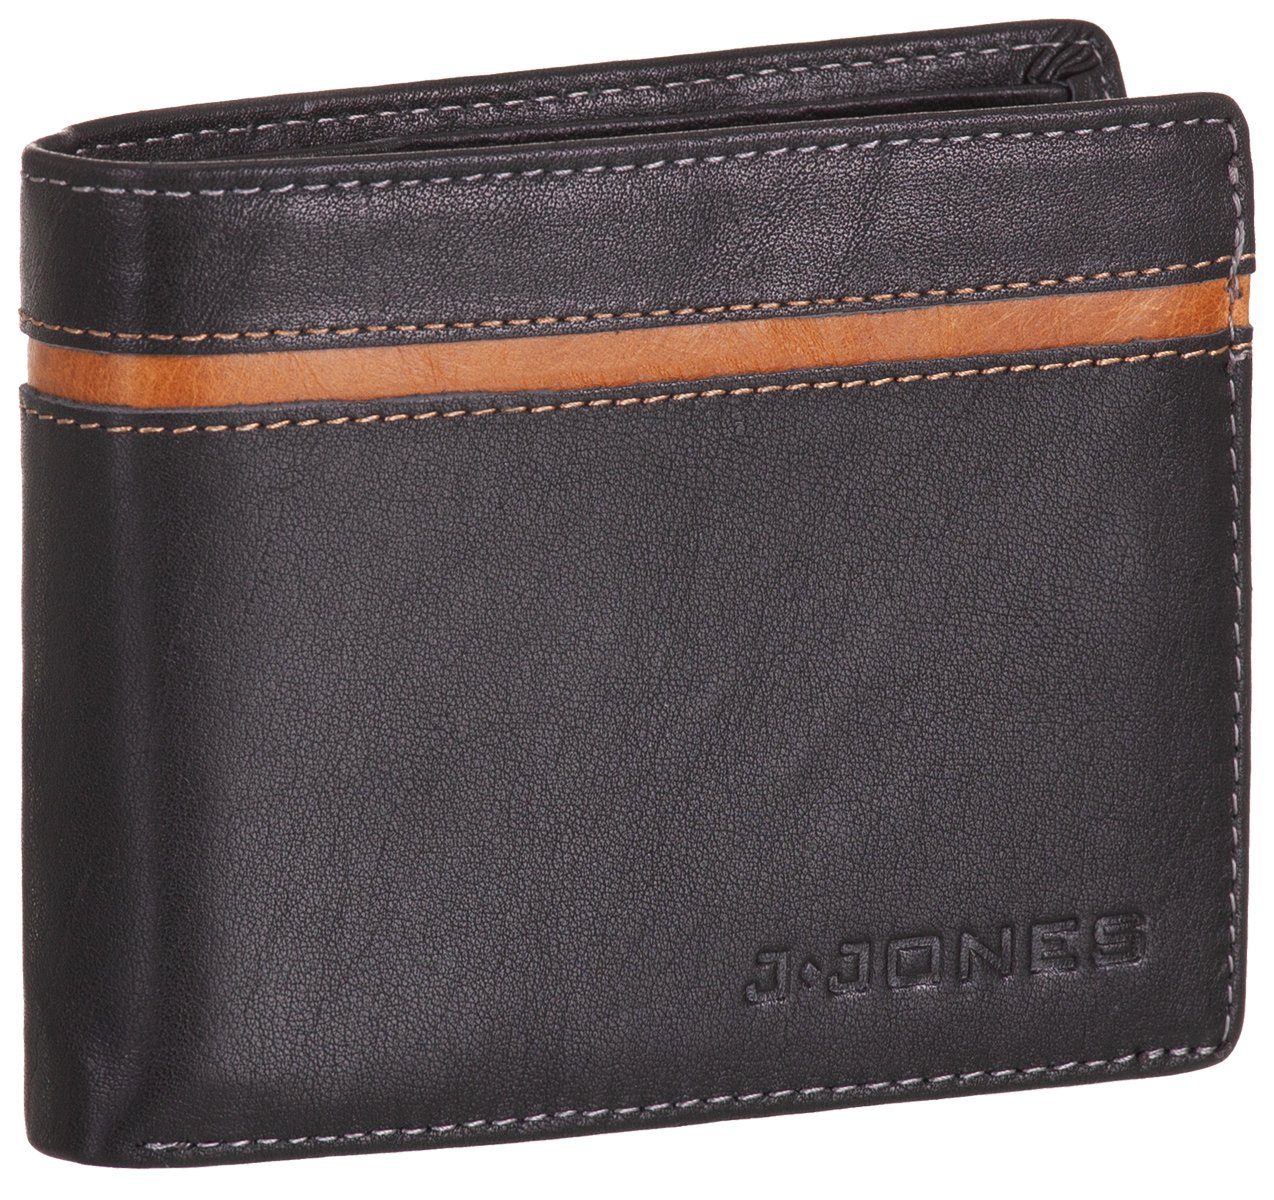 mit schwarz-braun Geldbörse, Leder RFID-Schutz Echt Münzfach faltbar Geldbörse Portemonnaie Geldbeutel J.Jones